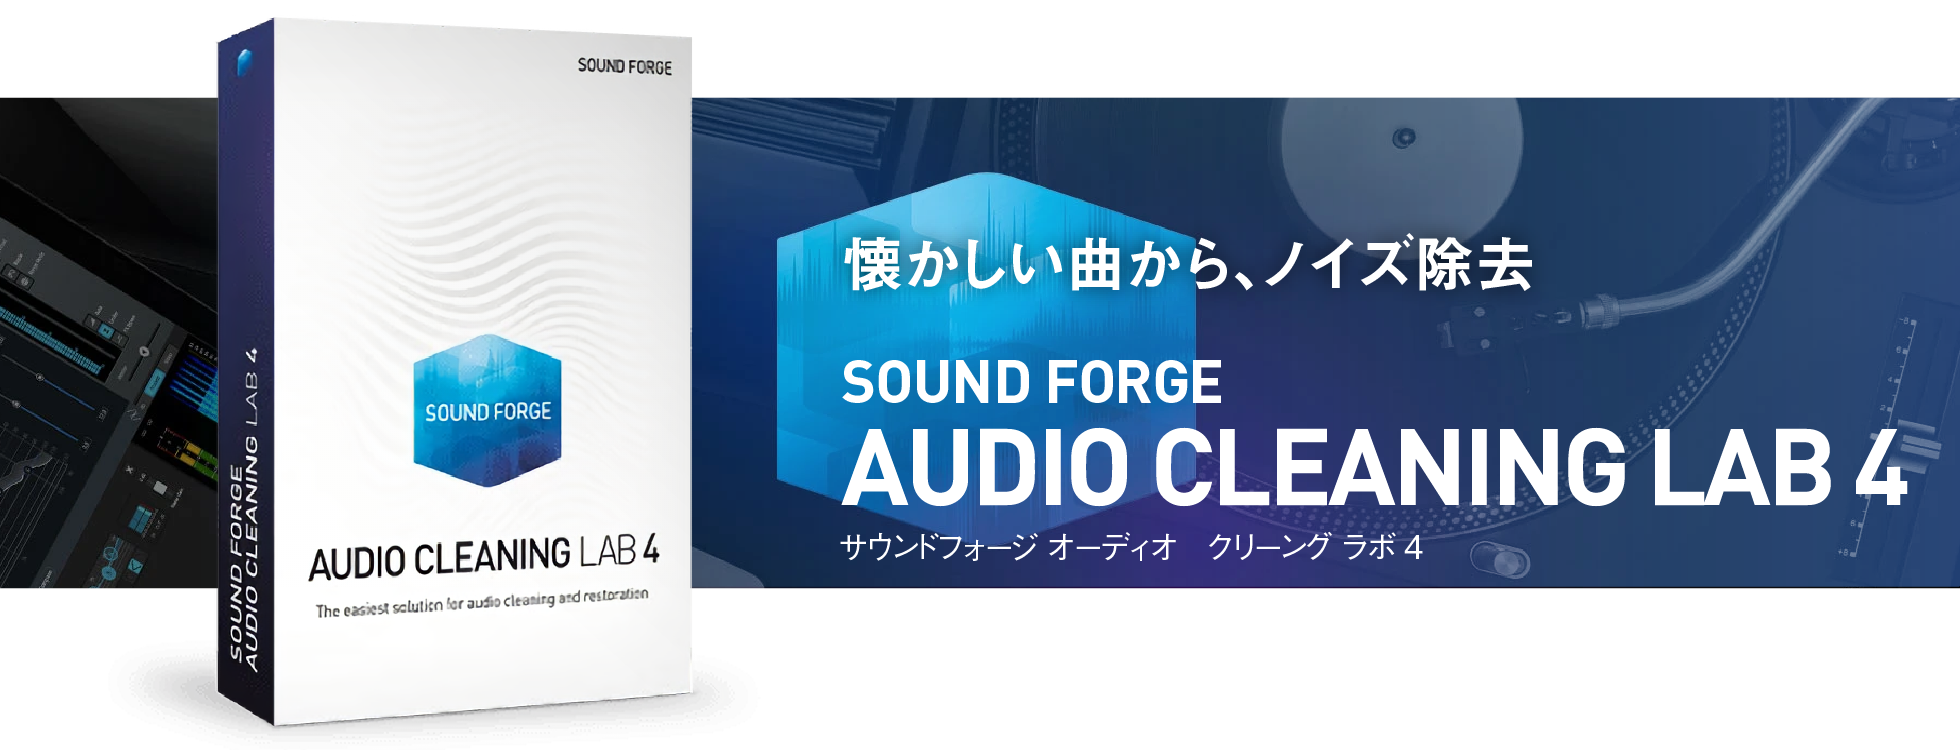 アナログ音源のデジタル化とノイズ除去「SOUND FORGE Audio Cleaning Lab 4」